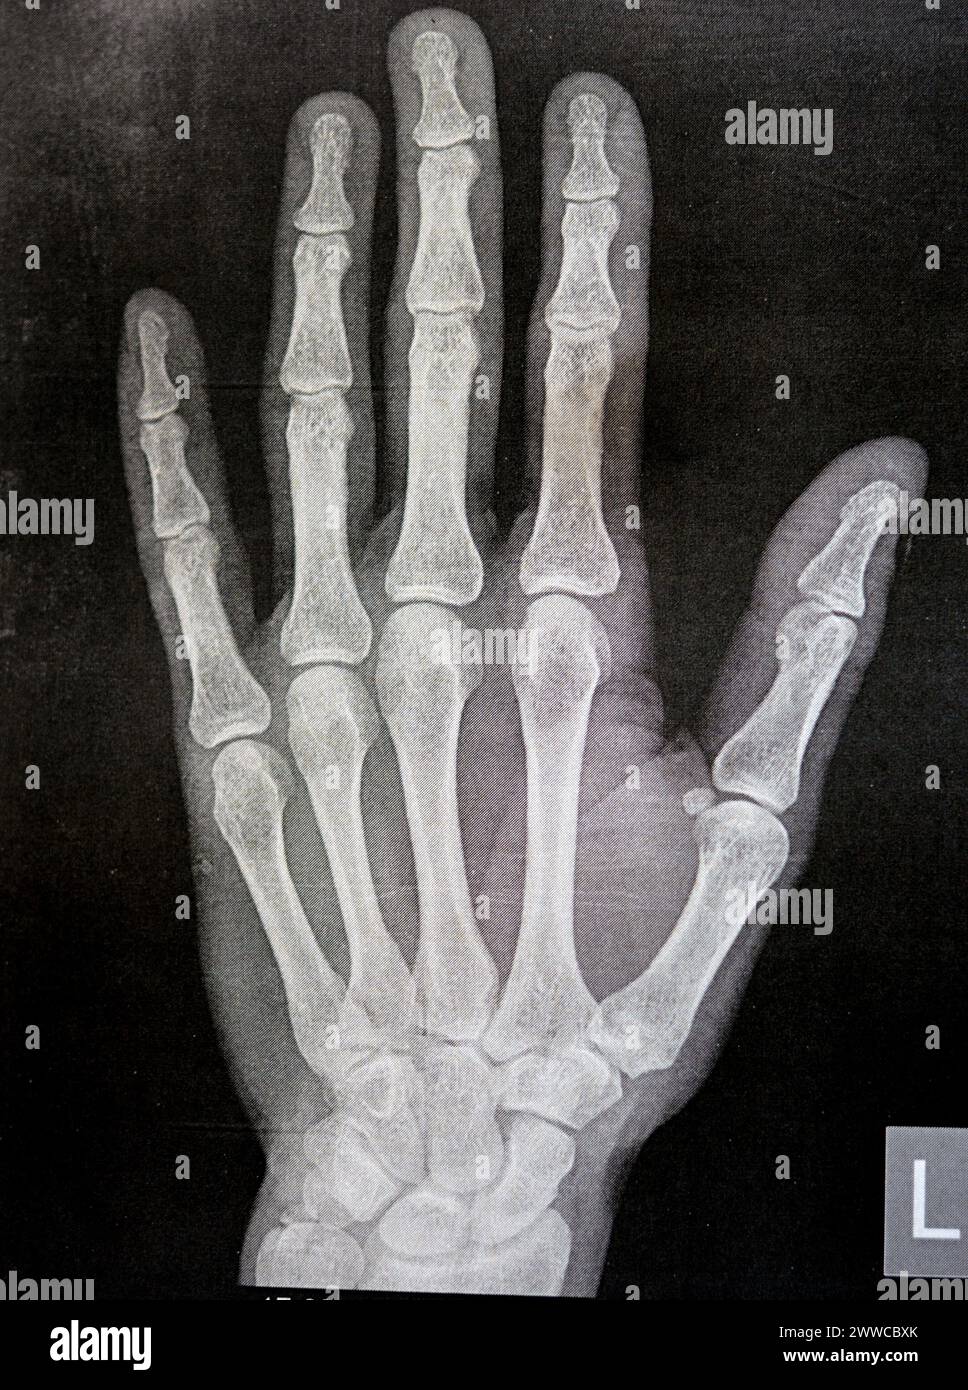 Radiographie simple de la main gauche d'un homme adulte après un traumatisme direct au doigt du pouce gauche montrant une étude osseuse normale, radiographie normale de la main à ex Banque D'Images